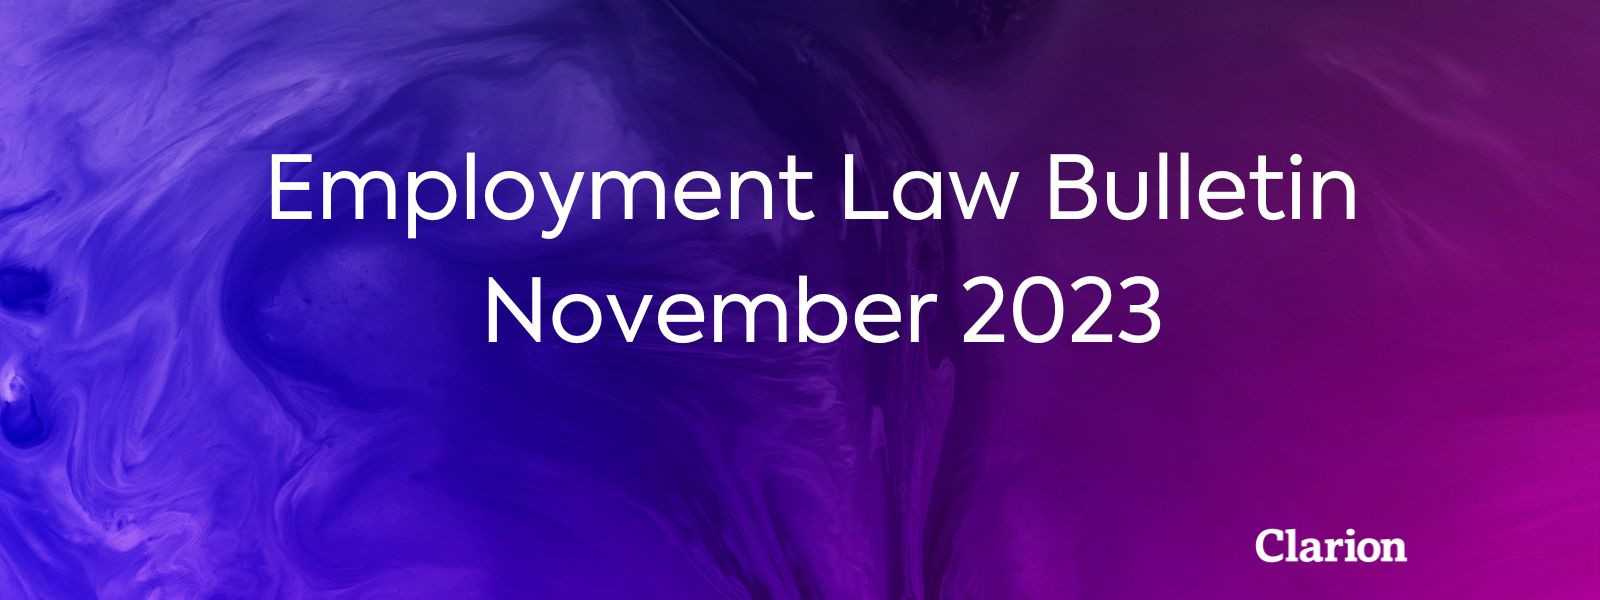 Employment Law Bulletin - November 2023